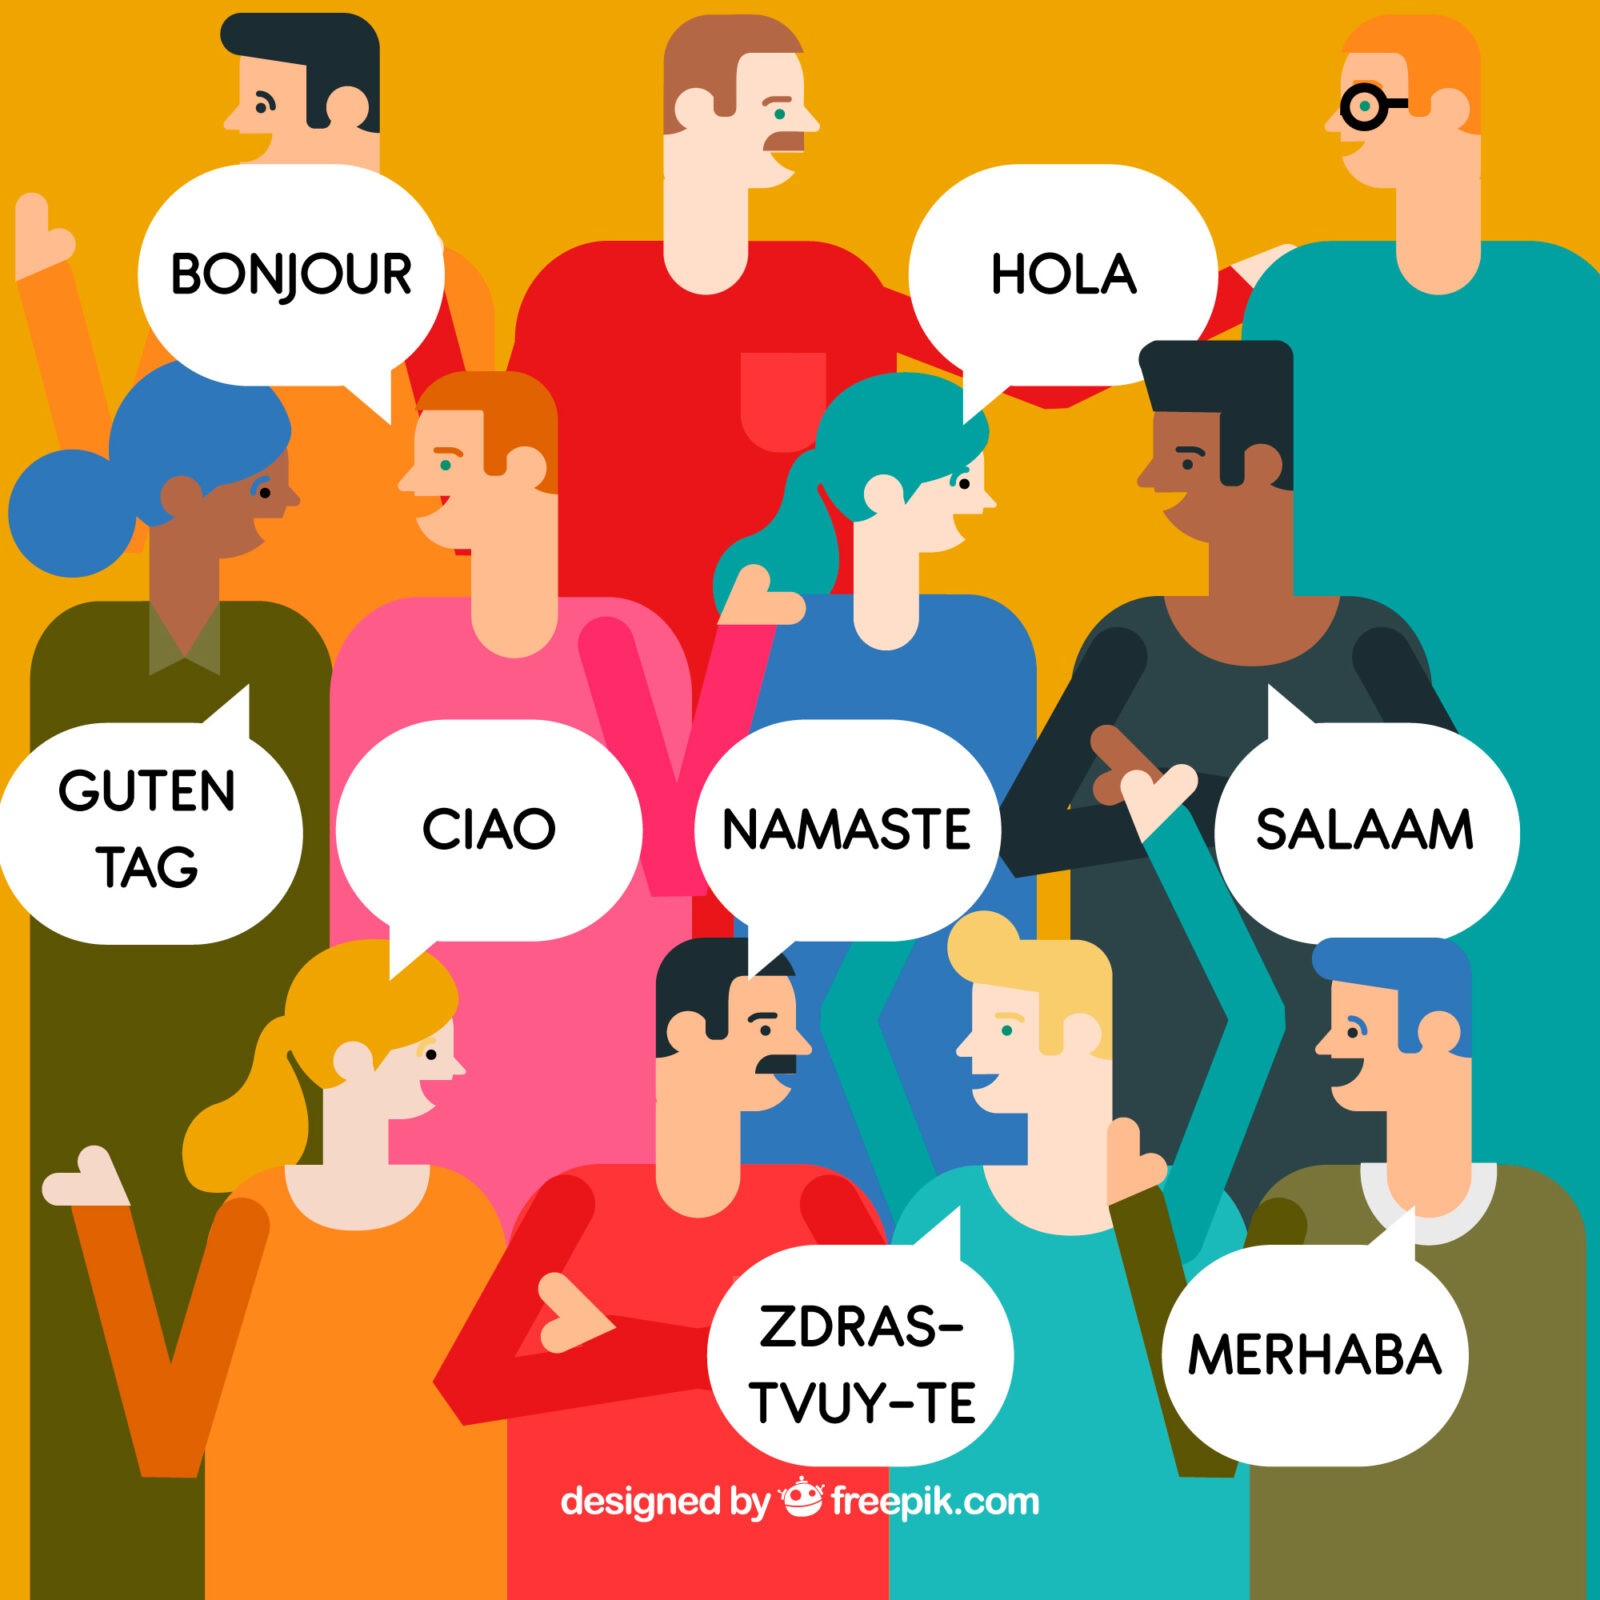 تعلم اللغة الثانية - تعلم اللغات وصحة الدماغ